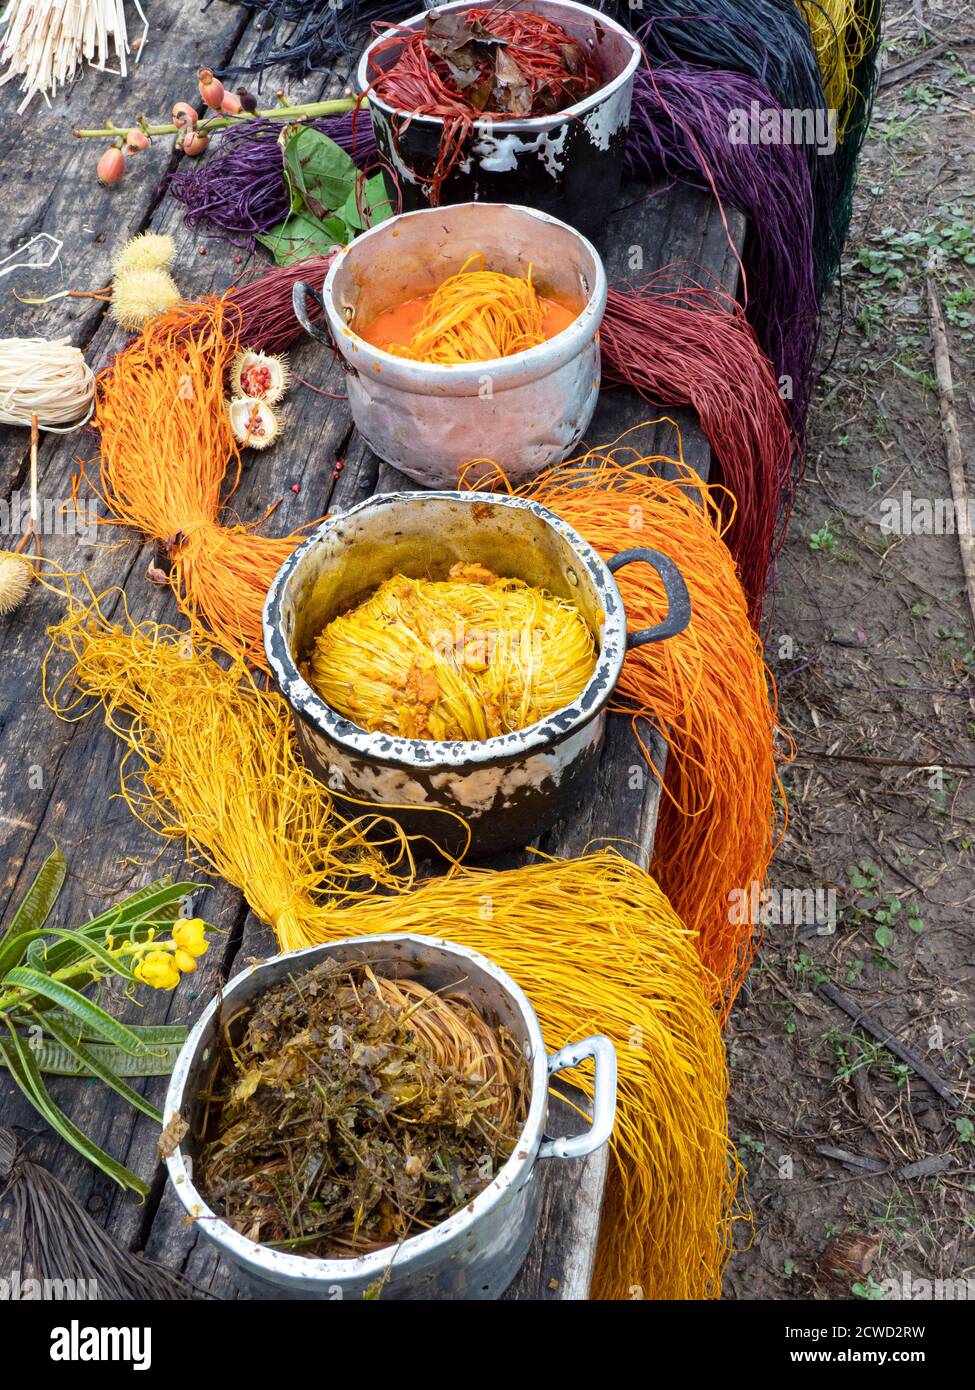 Des artisans locaux meurent de fibres pour tisser des paniers dans le village d'Amazonas, bassin de l'Amazone, Loreto, Pérou. Banque D'Images